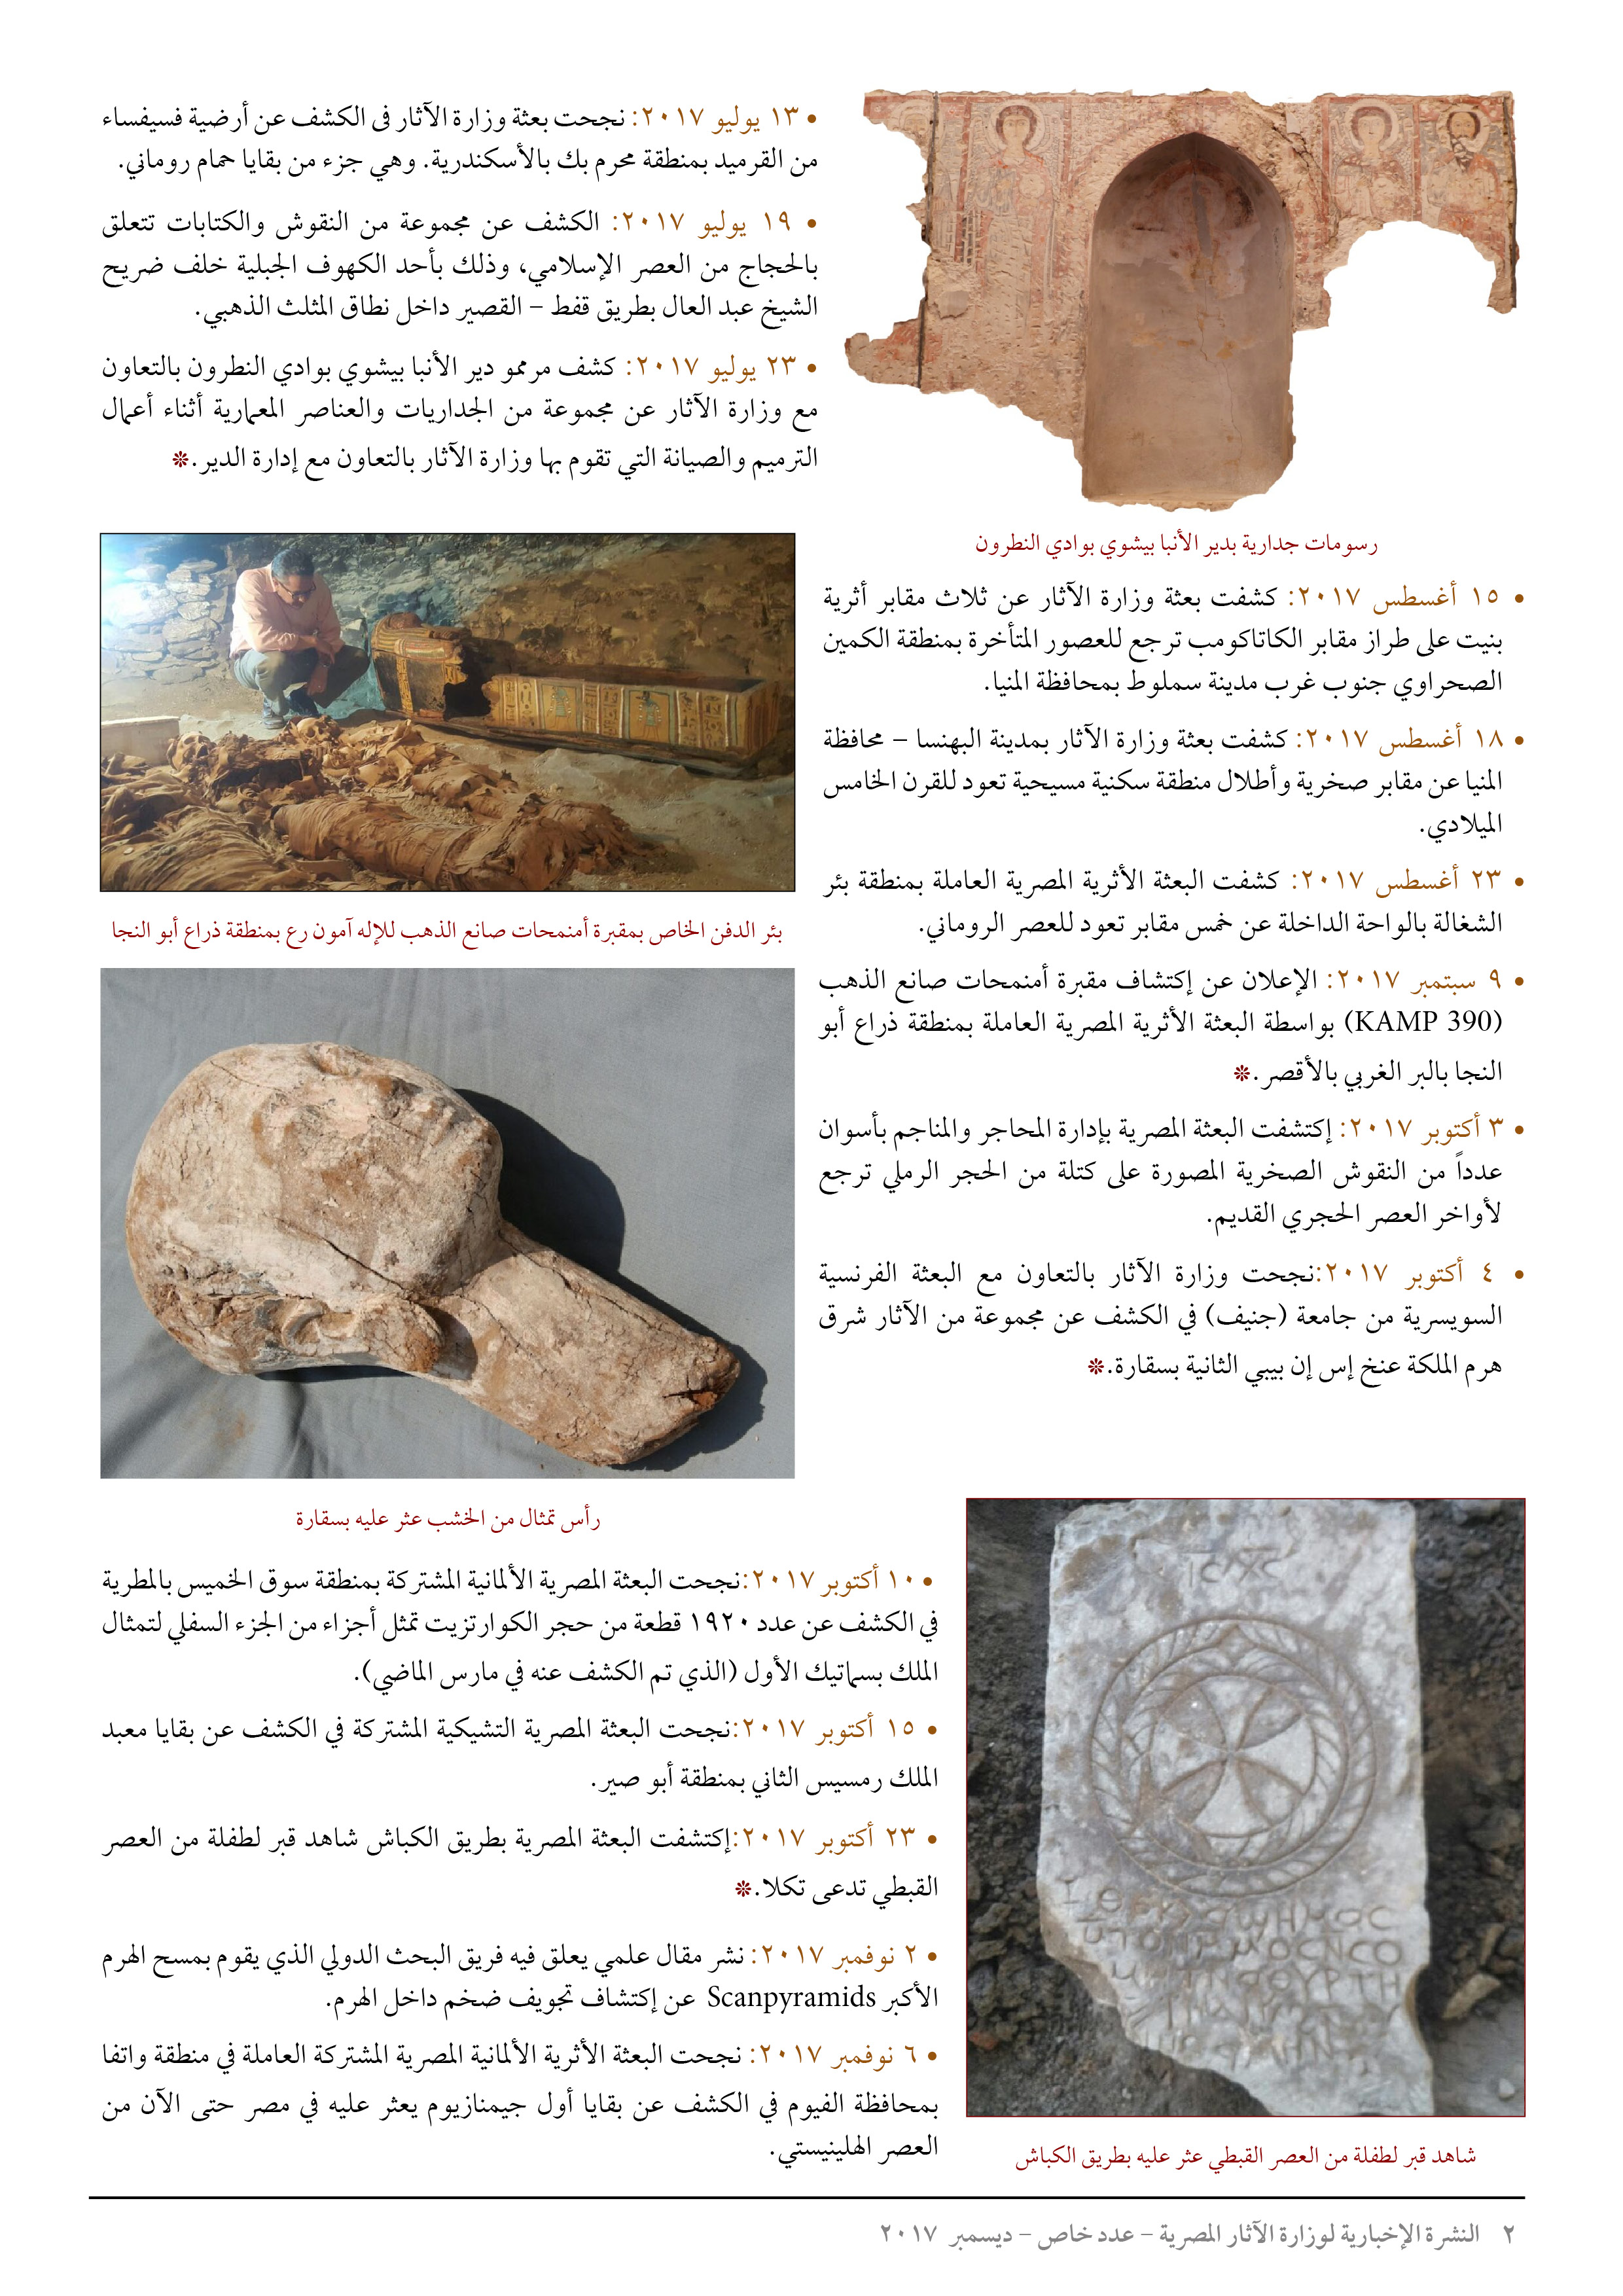 الاكتشافات الأثرية (2)